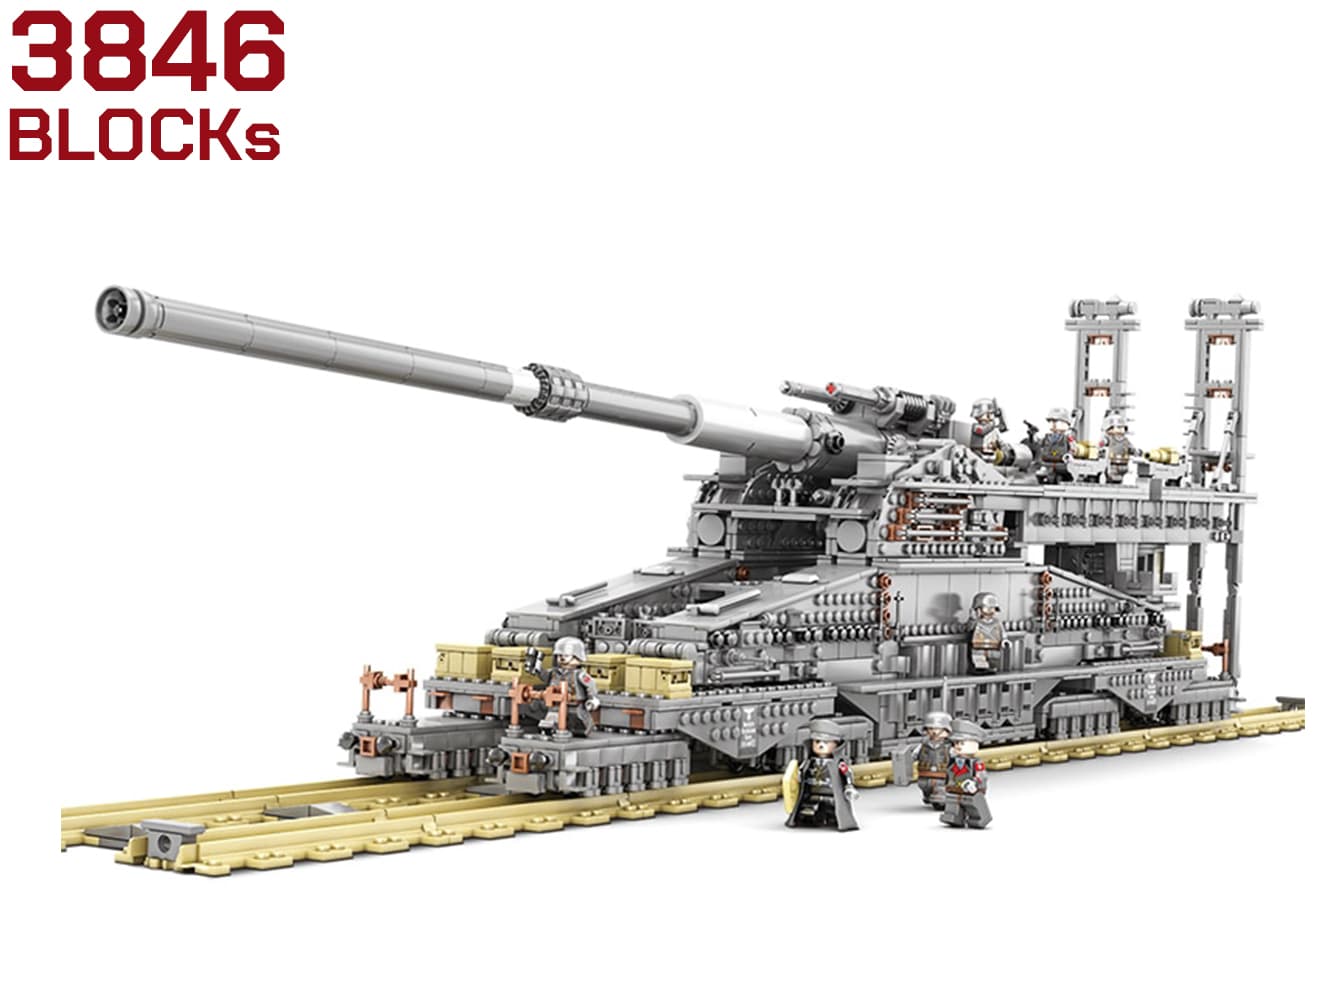 AFM ドイツ軍 80cm 列車砲 Dora 3846Blocks 1：72 スケール ドイツ軍 巨大列車砲 ドーラ 3in1仕様 ミリタリーグッズ ディスプレイ用